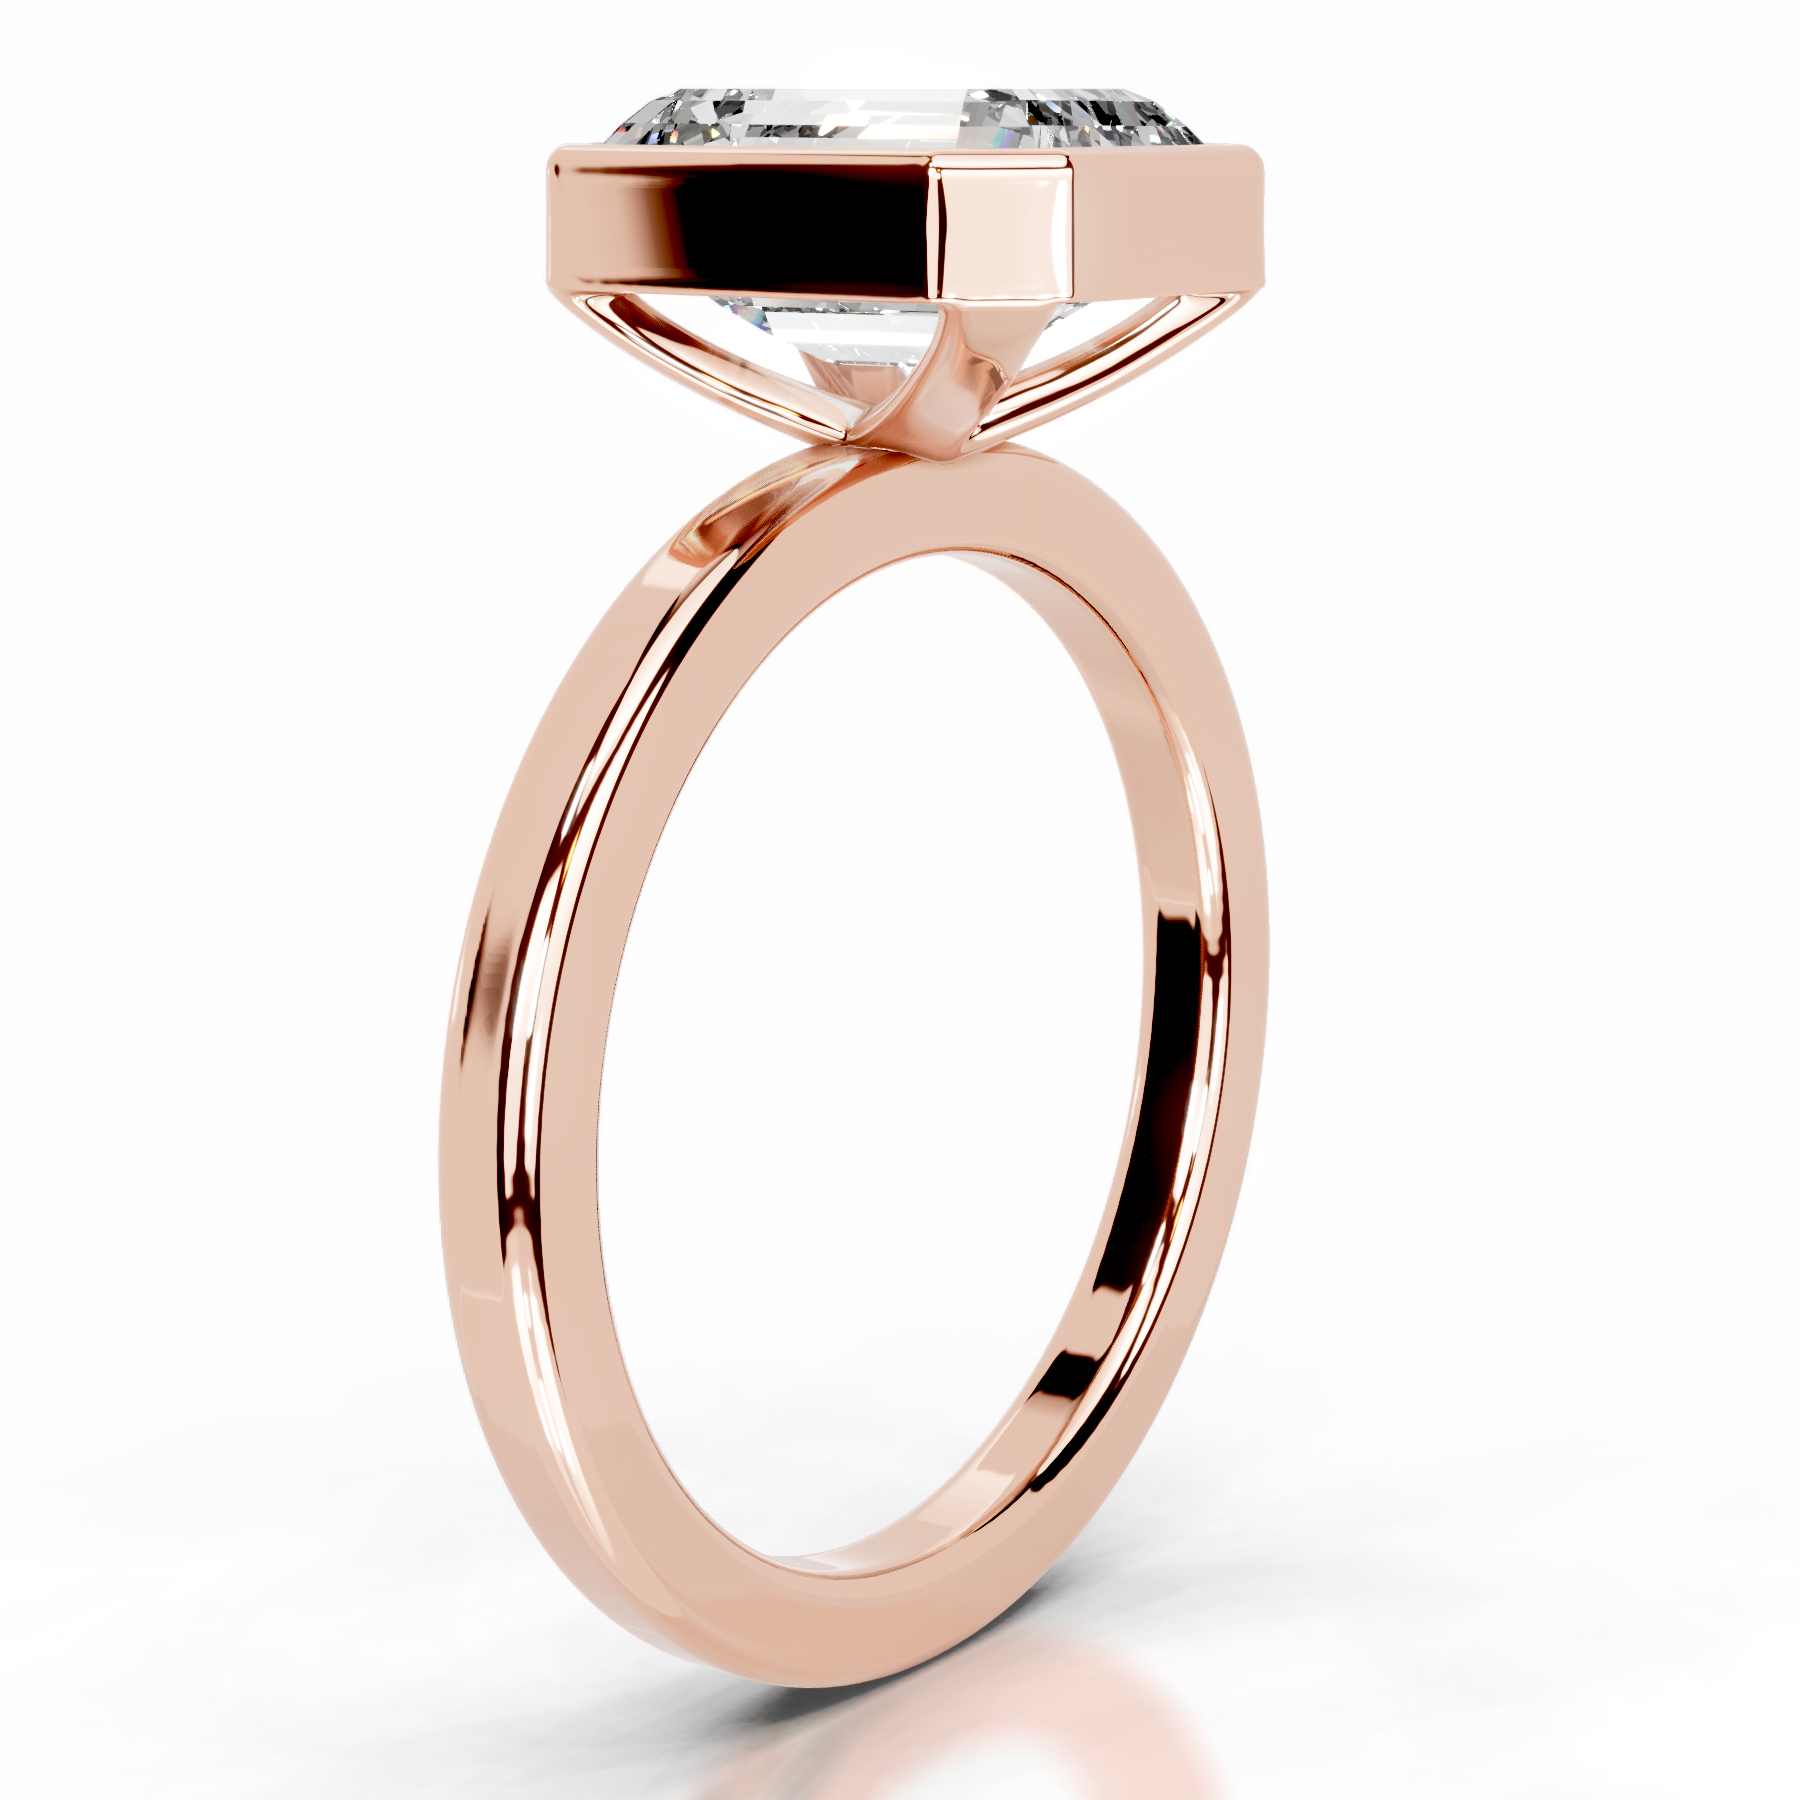 Dima Diamond Engagement Ring   (2 Carat) -14K Rose Gold